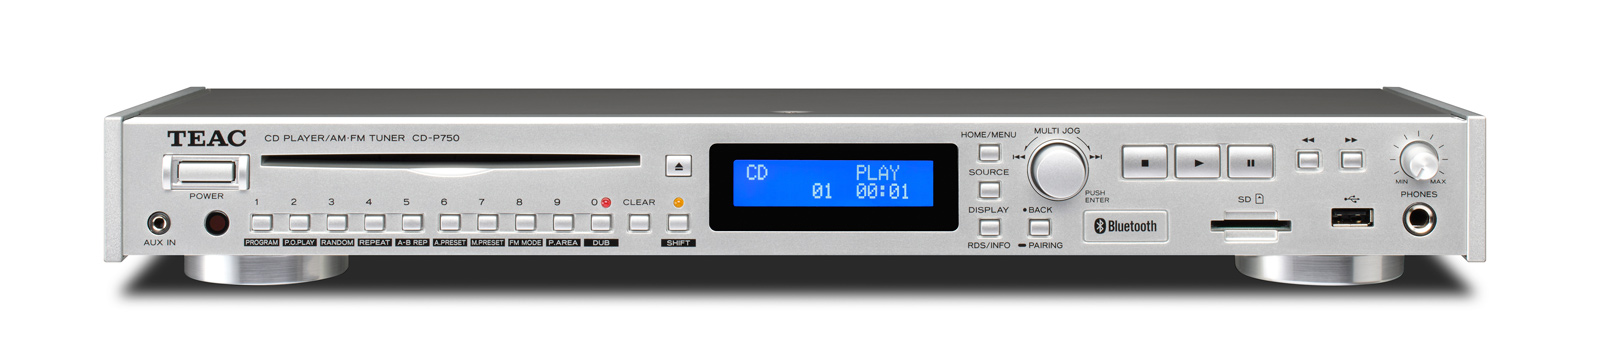 CD-P750